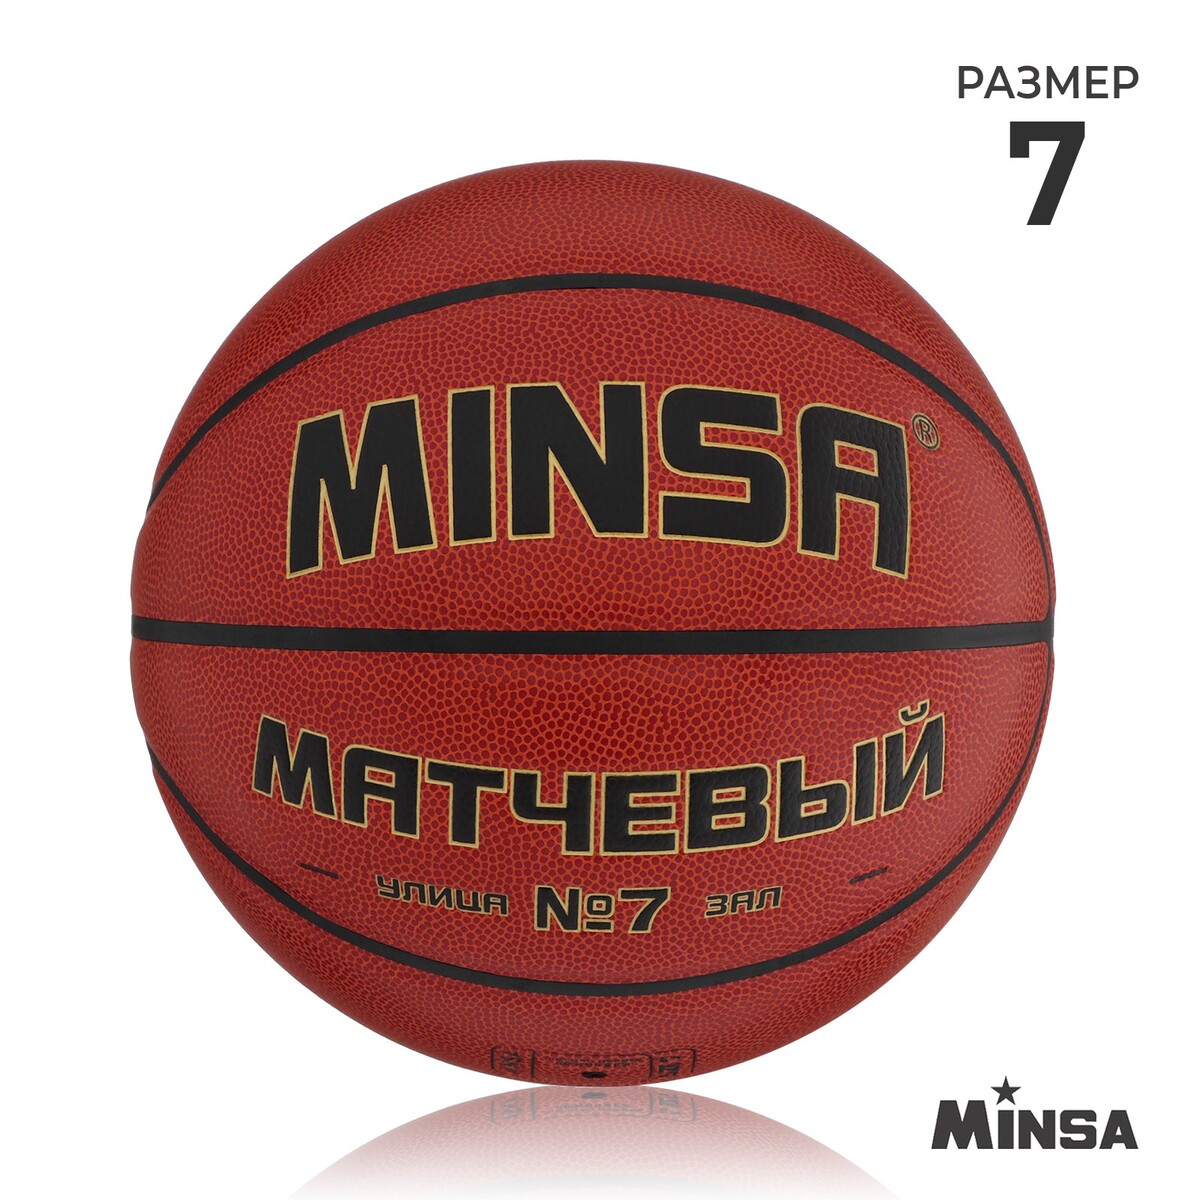 Баскетбольный мяч minsa, матчевый, microfiber pu, клееный, 8 панелей, р. 7 мяч баскетбольный minsa пвх клееный 8 панелей р 5